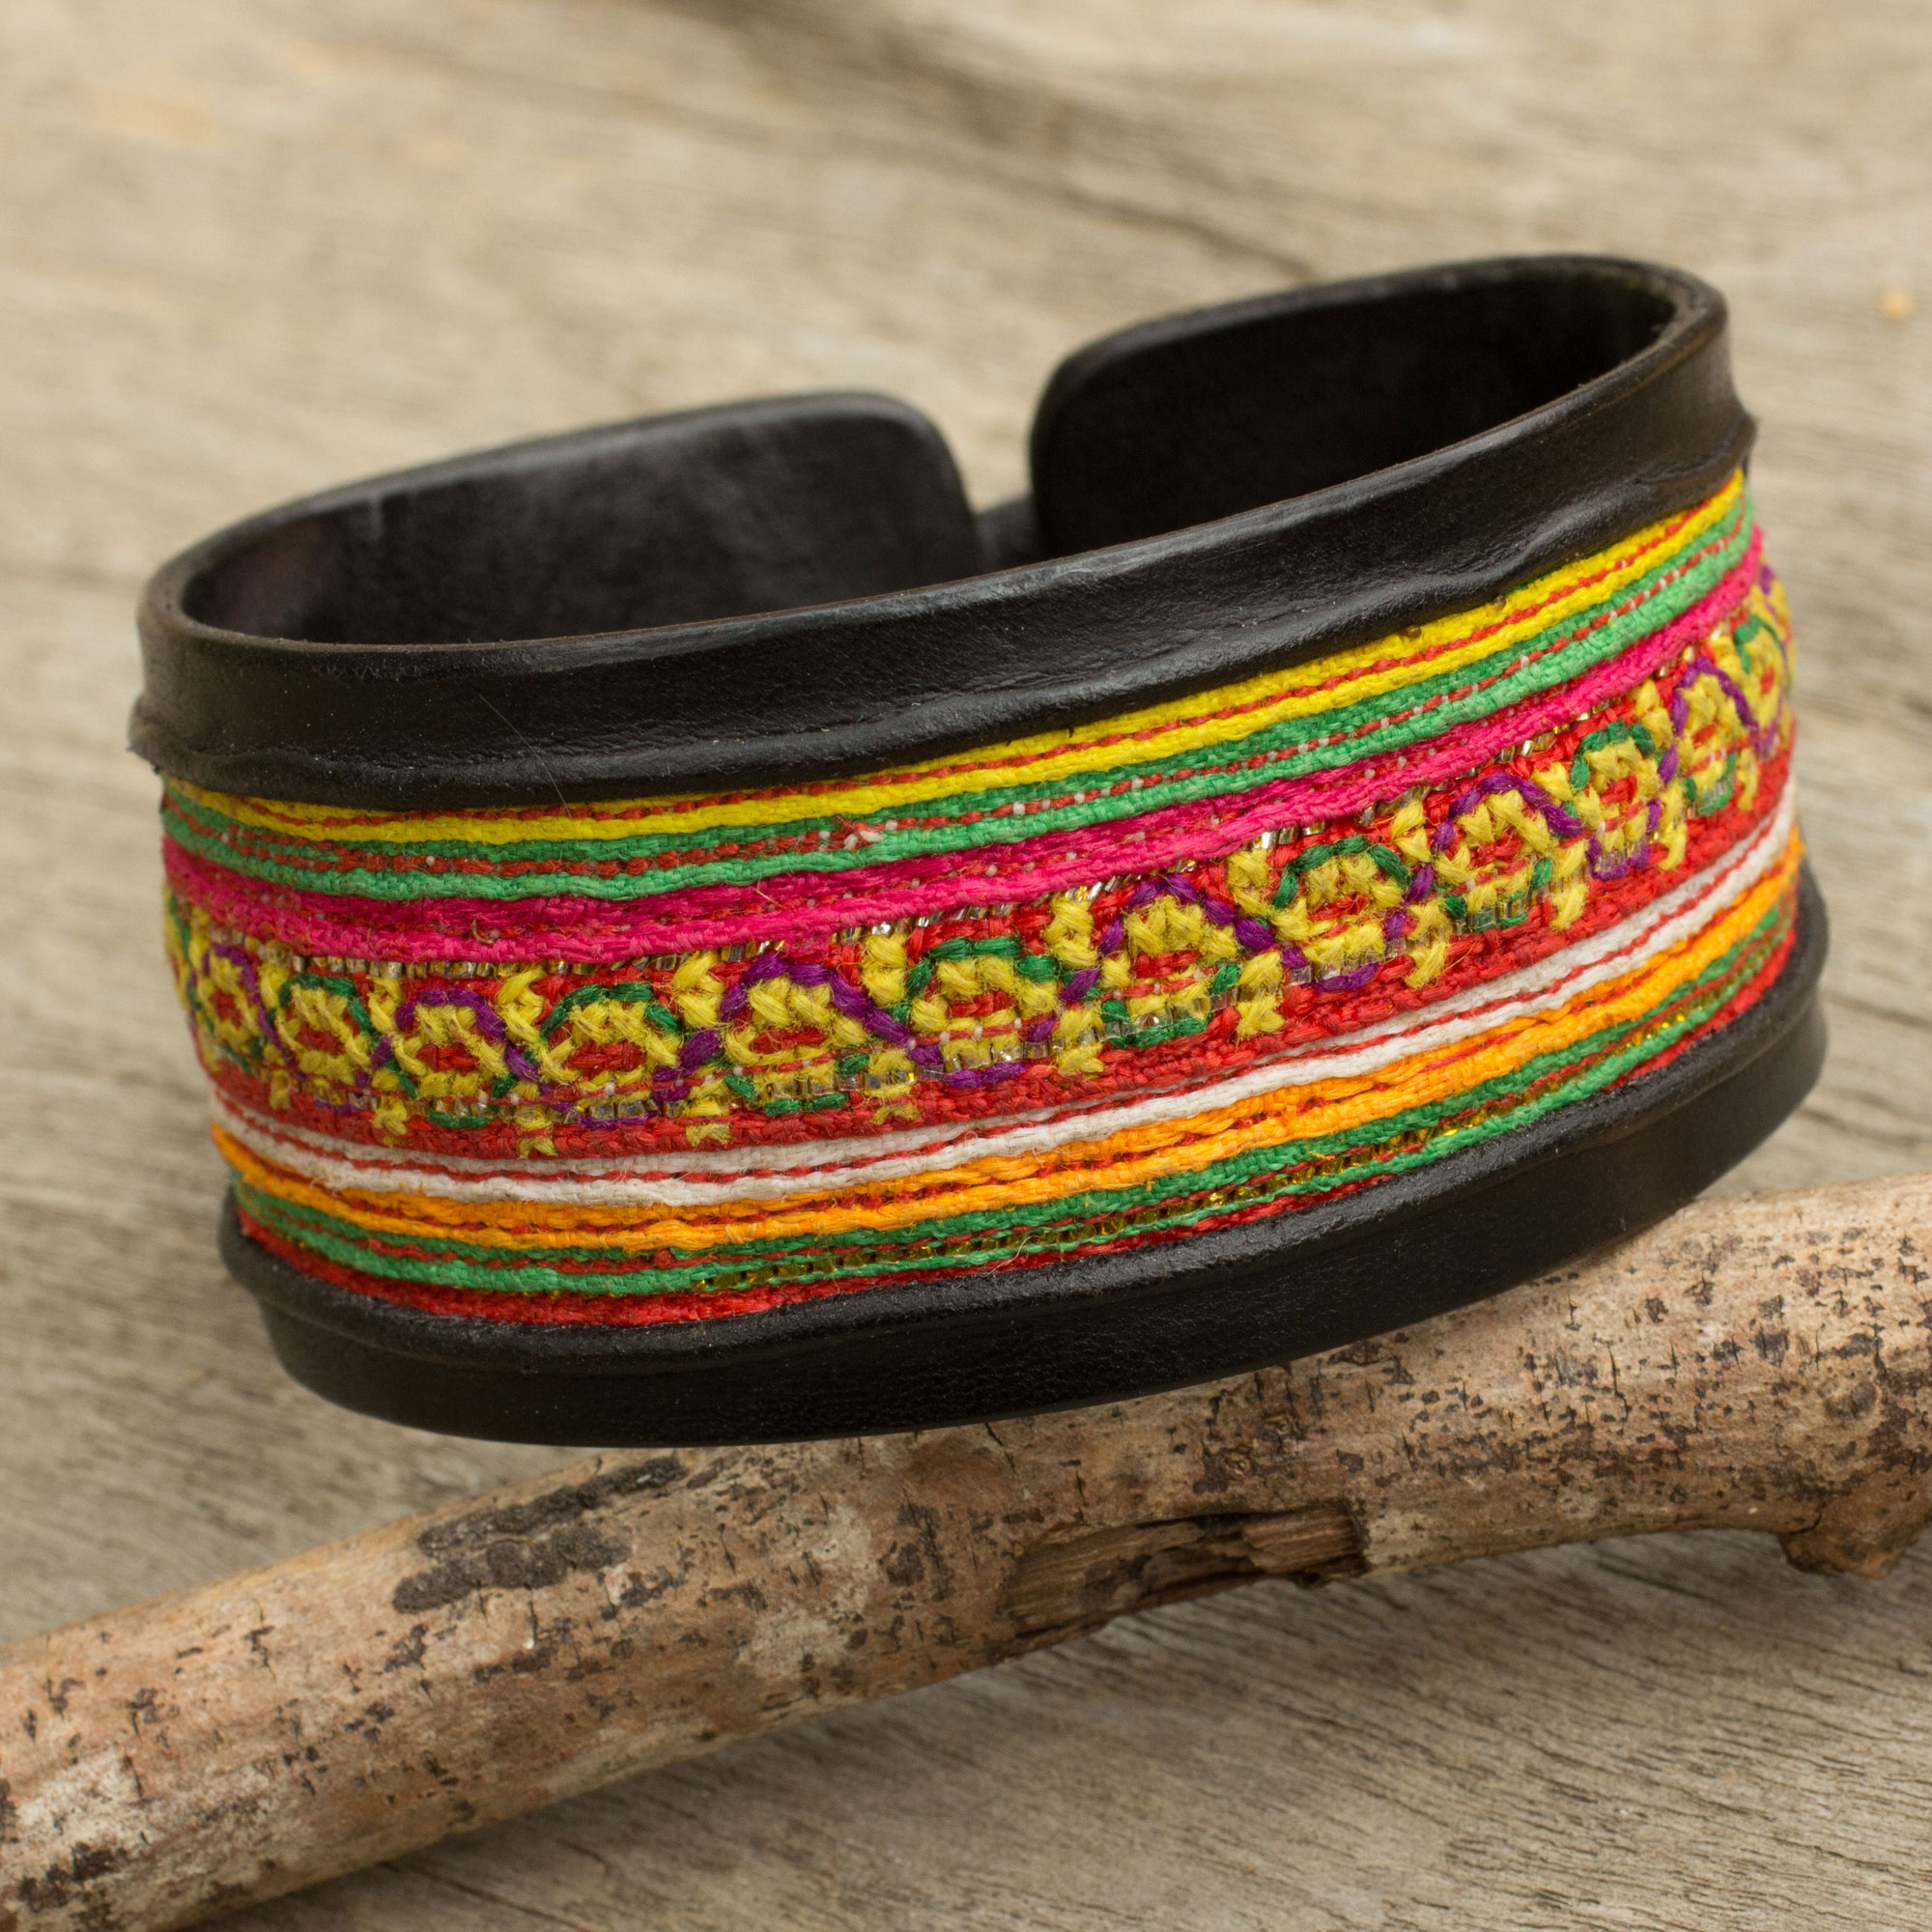 Hill Tribe Festivity Black Leather Bracelet with Hill Tribe Embroidery friendship bracelet